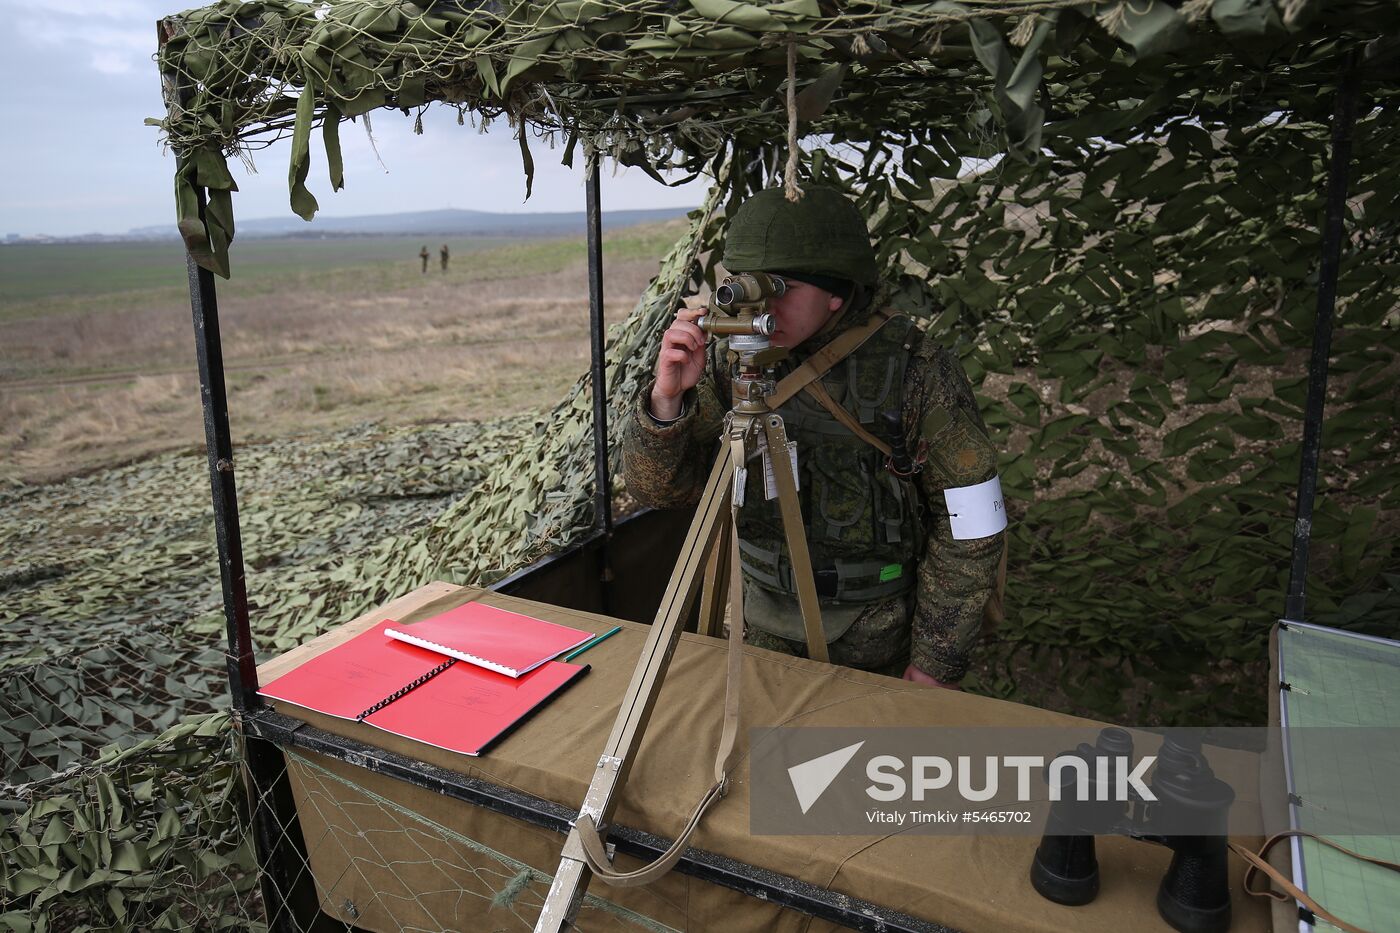 Coastal missile artillery system crews hold drill in Krasnodar Territory